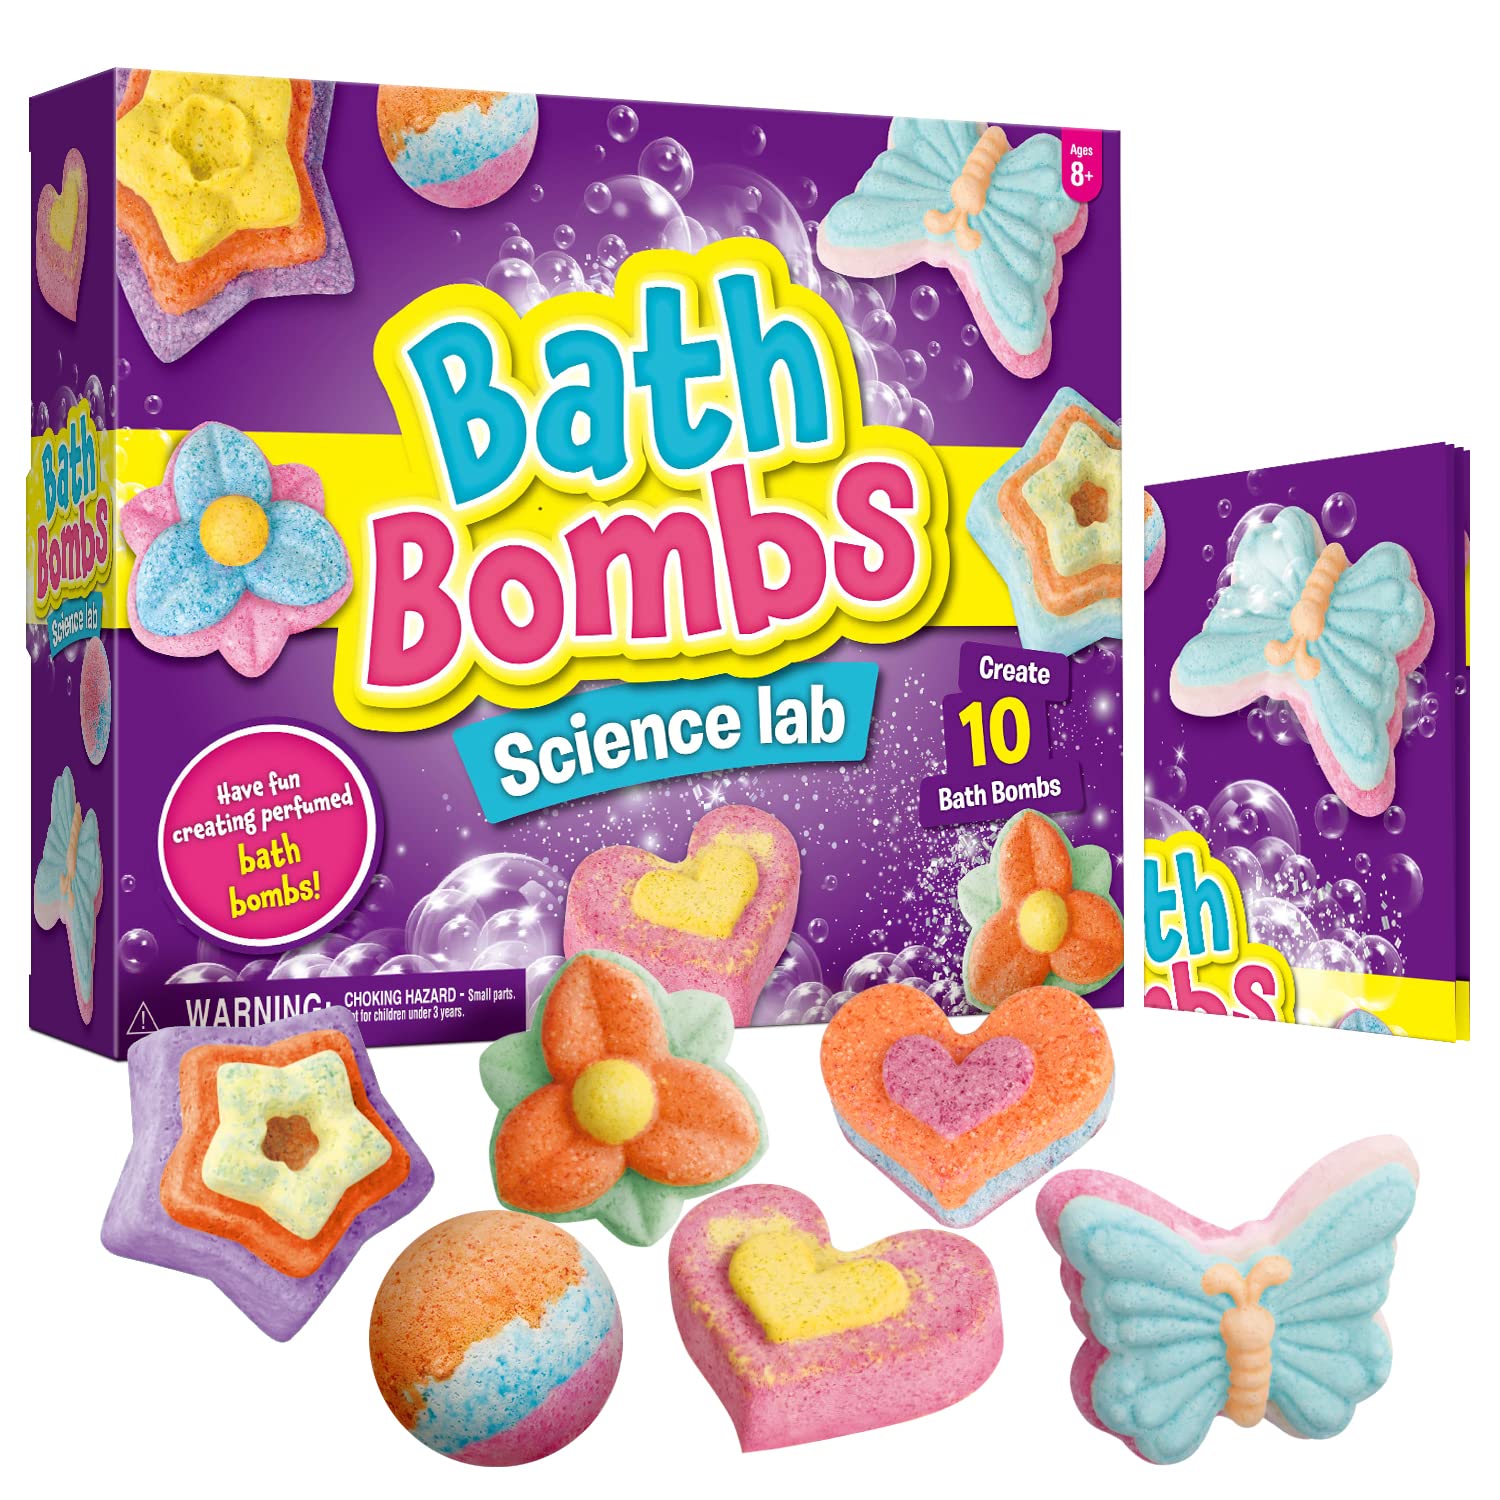 XXTOYS Bath Bombs Science Lab - Create 10 Bath Bombs Bath Toys for